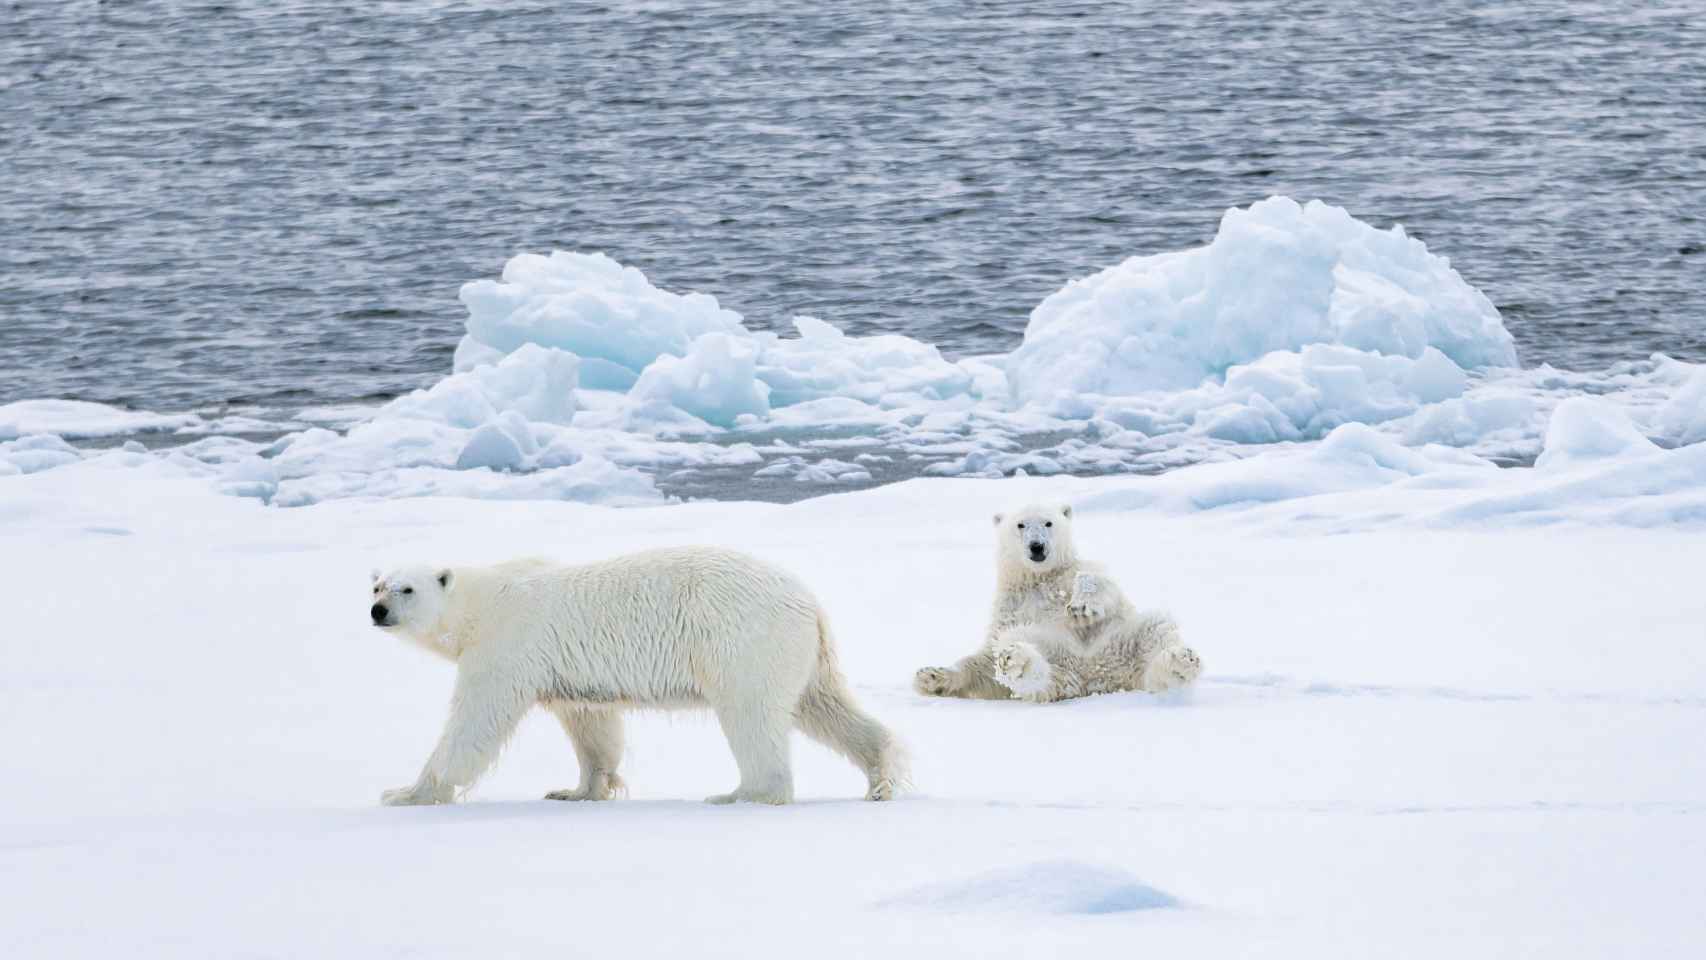 Ver osos polares estará garantizado en los cruceros árticos, que empiezan en abril.